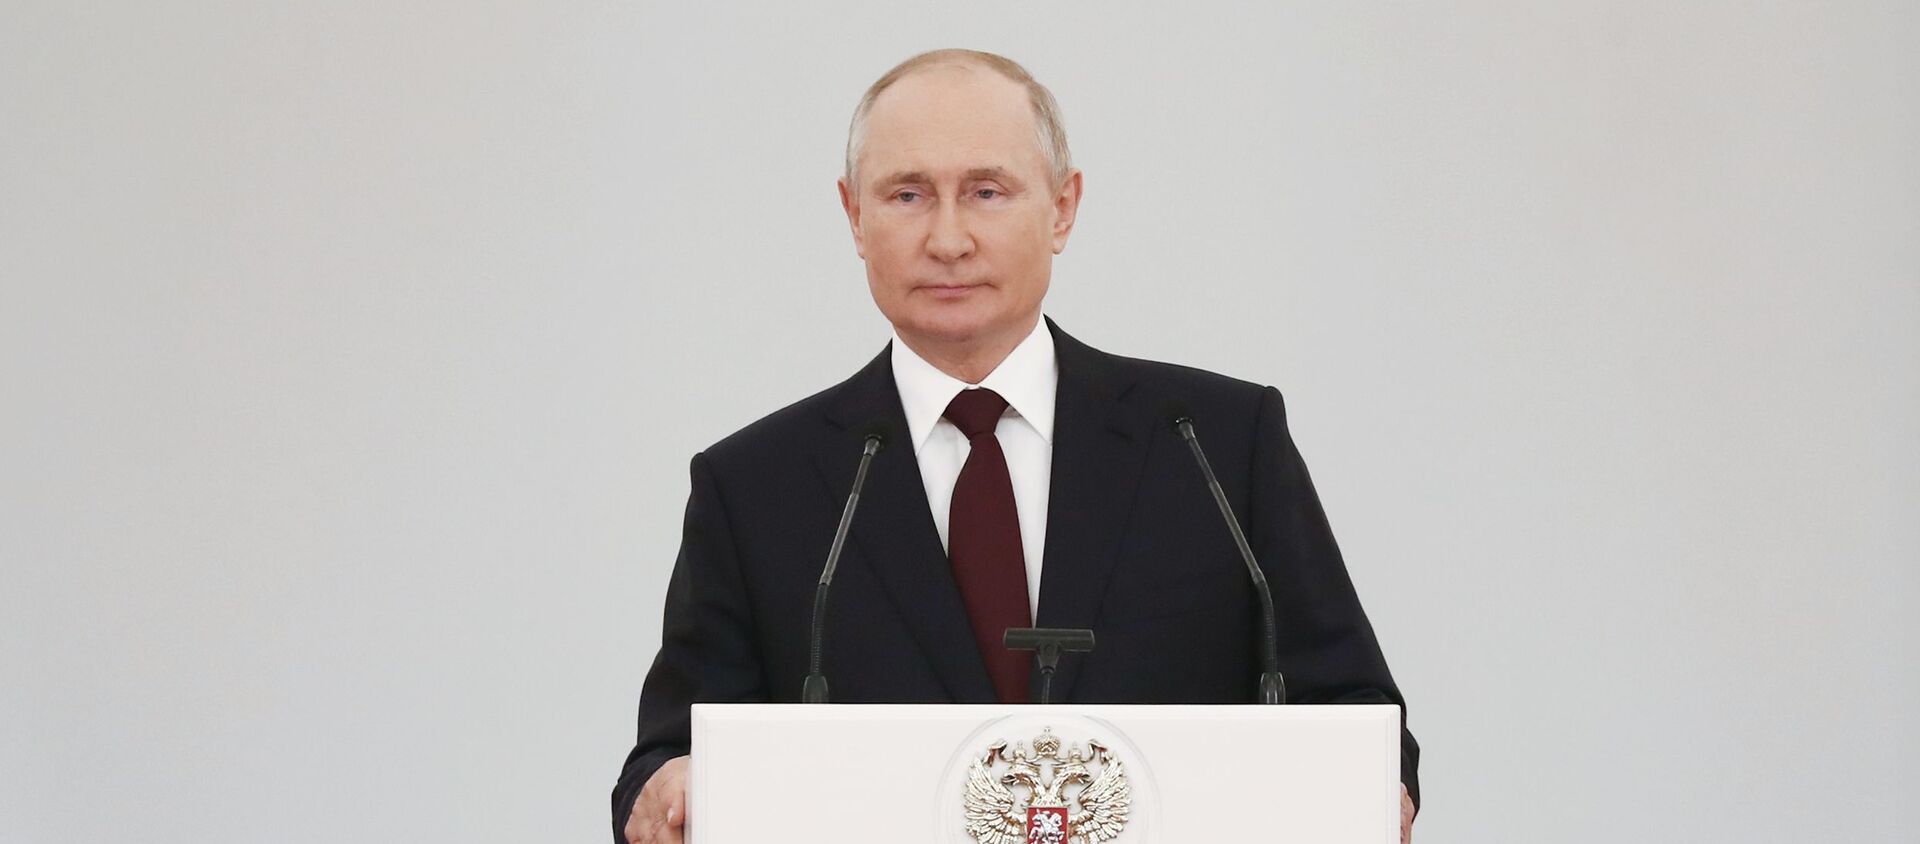 Tổng thống Vladimir Putin nói về tính độc nhất và tính ưu việt của vũ khí mới ở Liên bang Nga - Sputnik Việt Nam, 1920, 28.06.2021